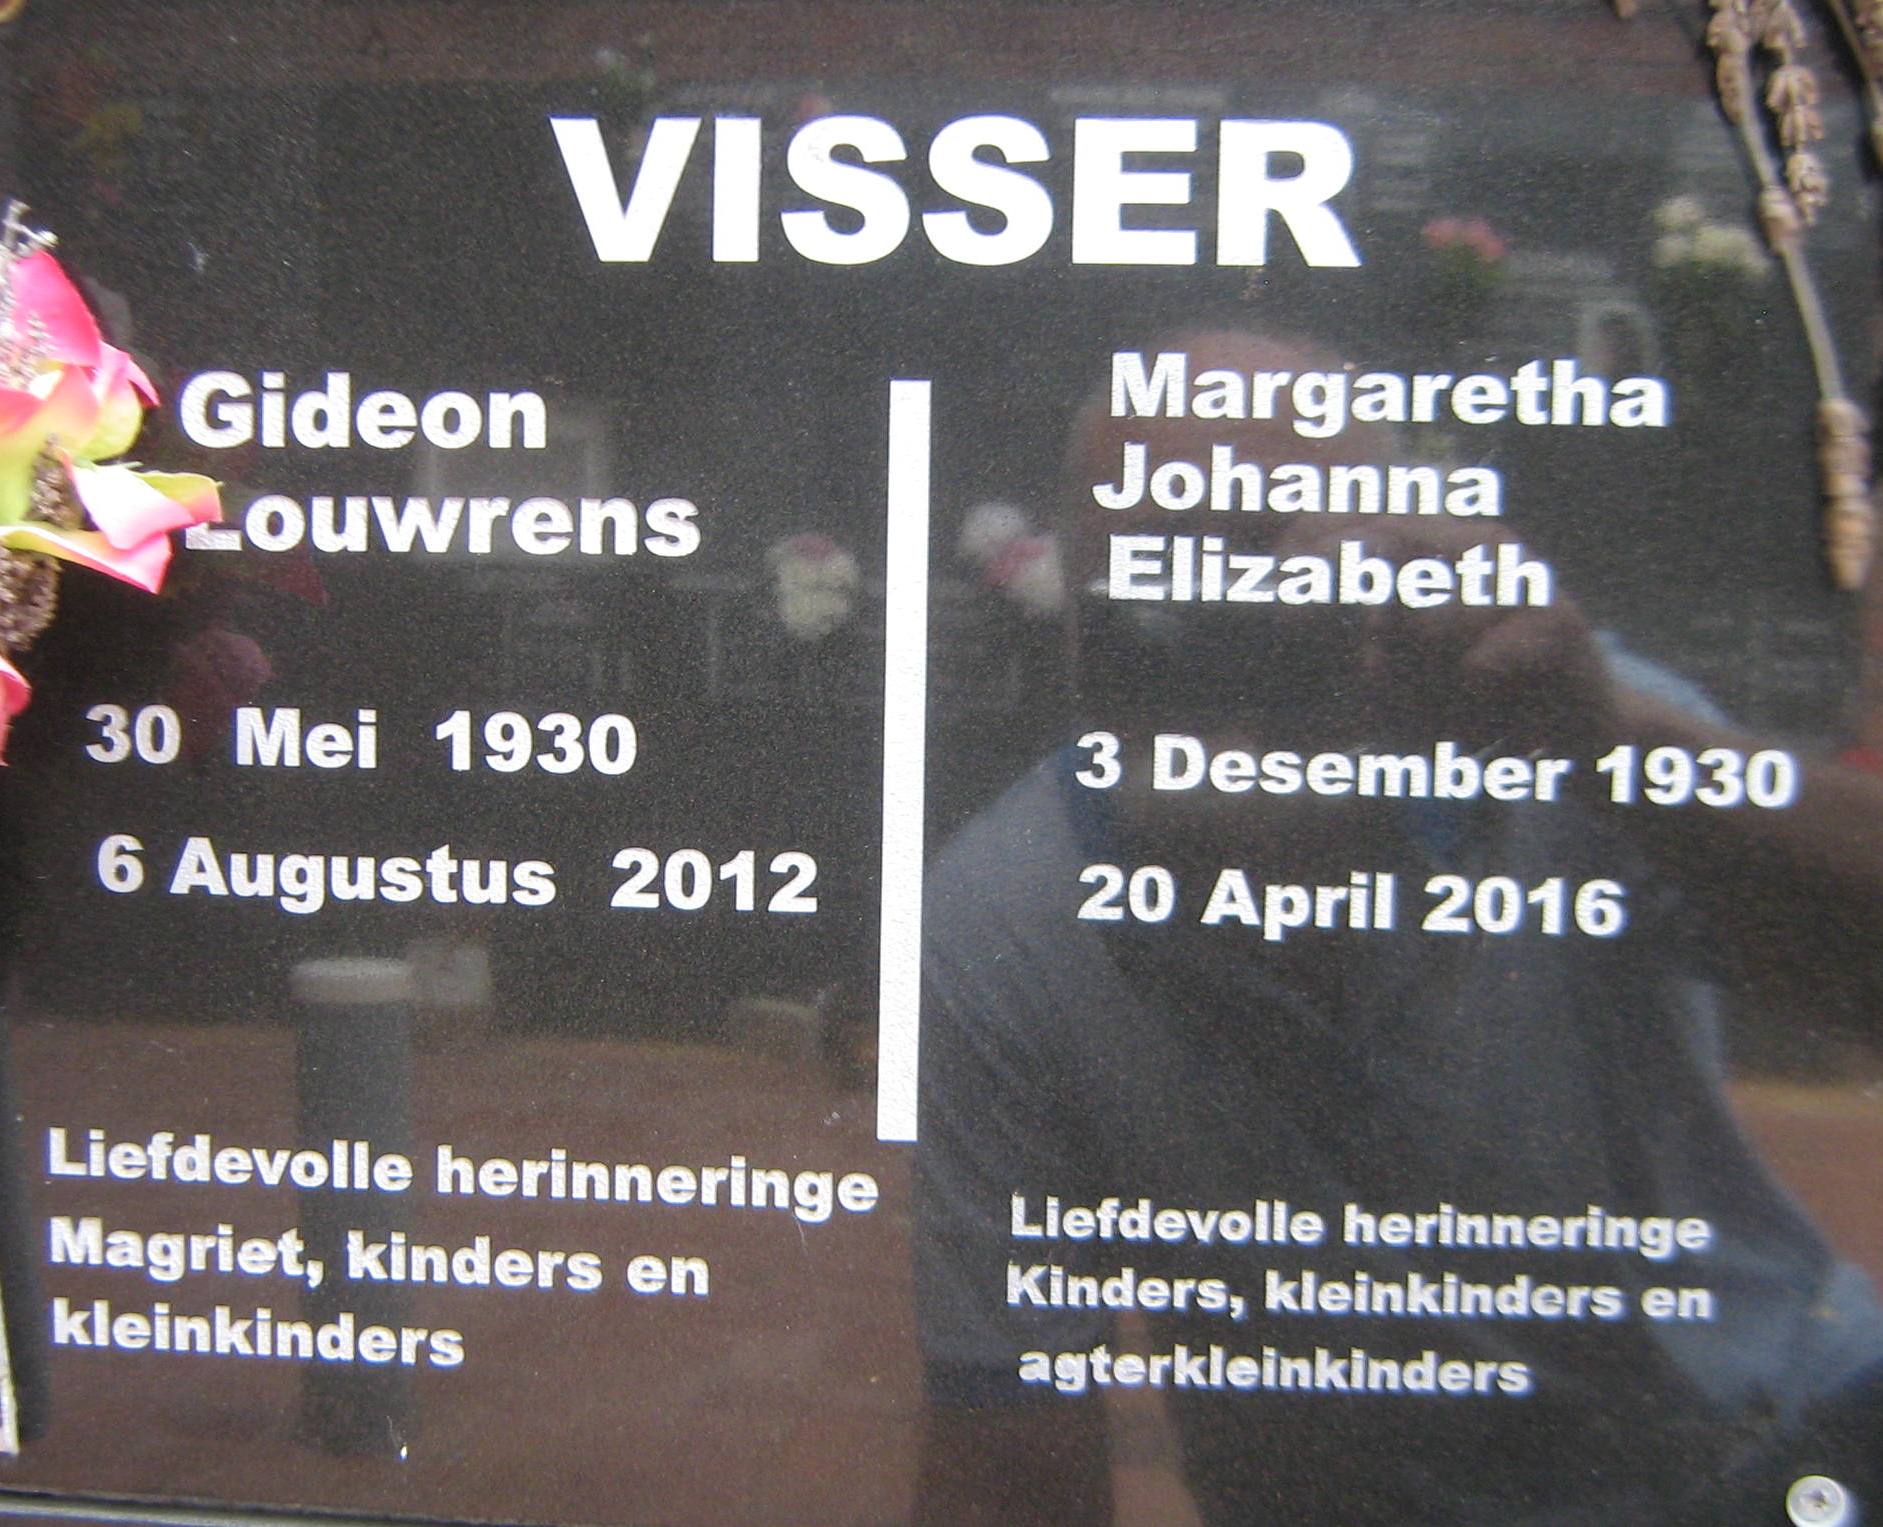 VISSER Gideon Louwrens 1930-2012 & Margaretha Johanna Elizabeth 1930-2016